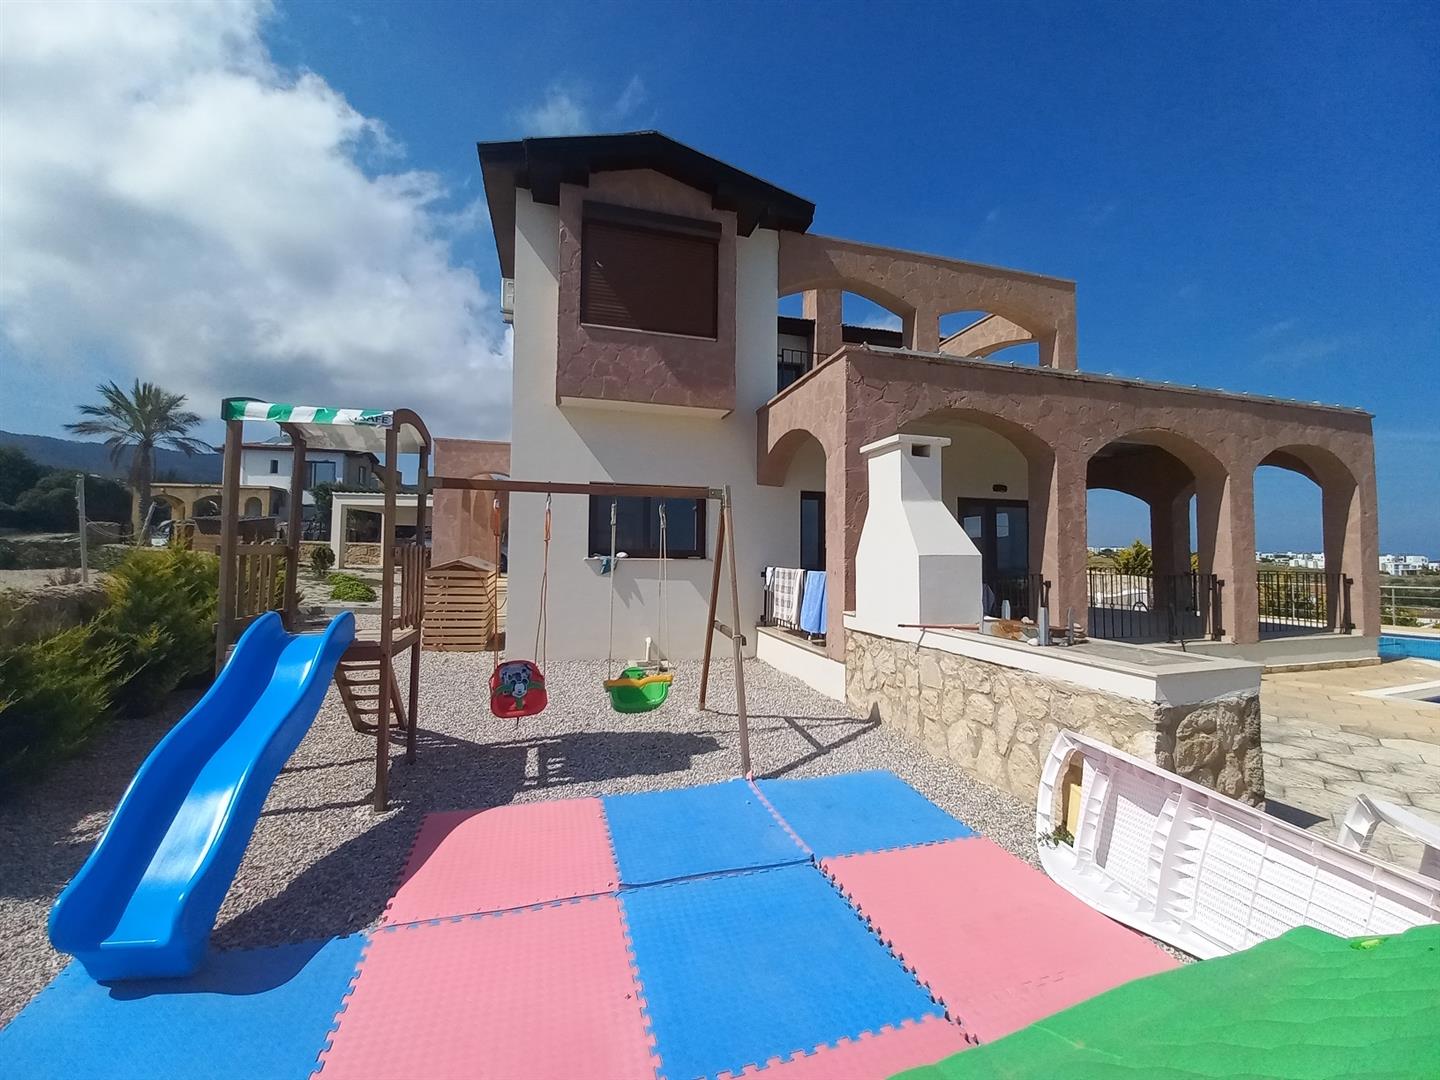 4 bed villa for sale, Bahceli - Property Image 1